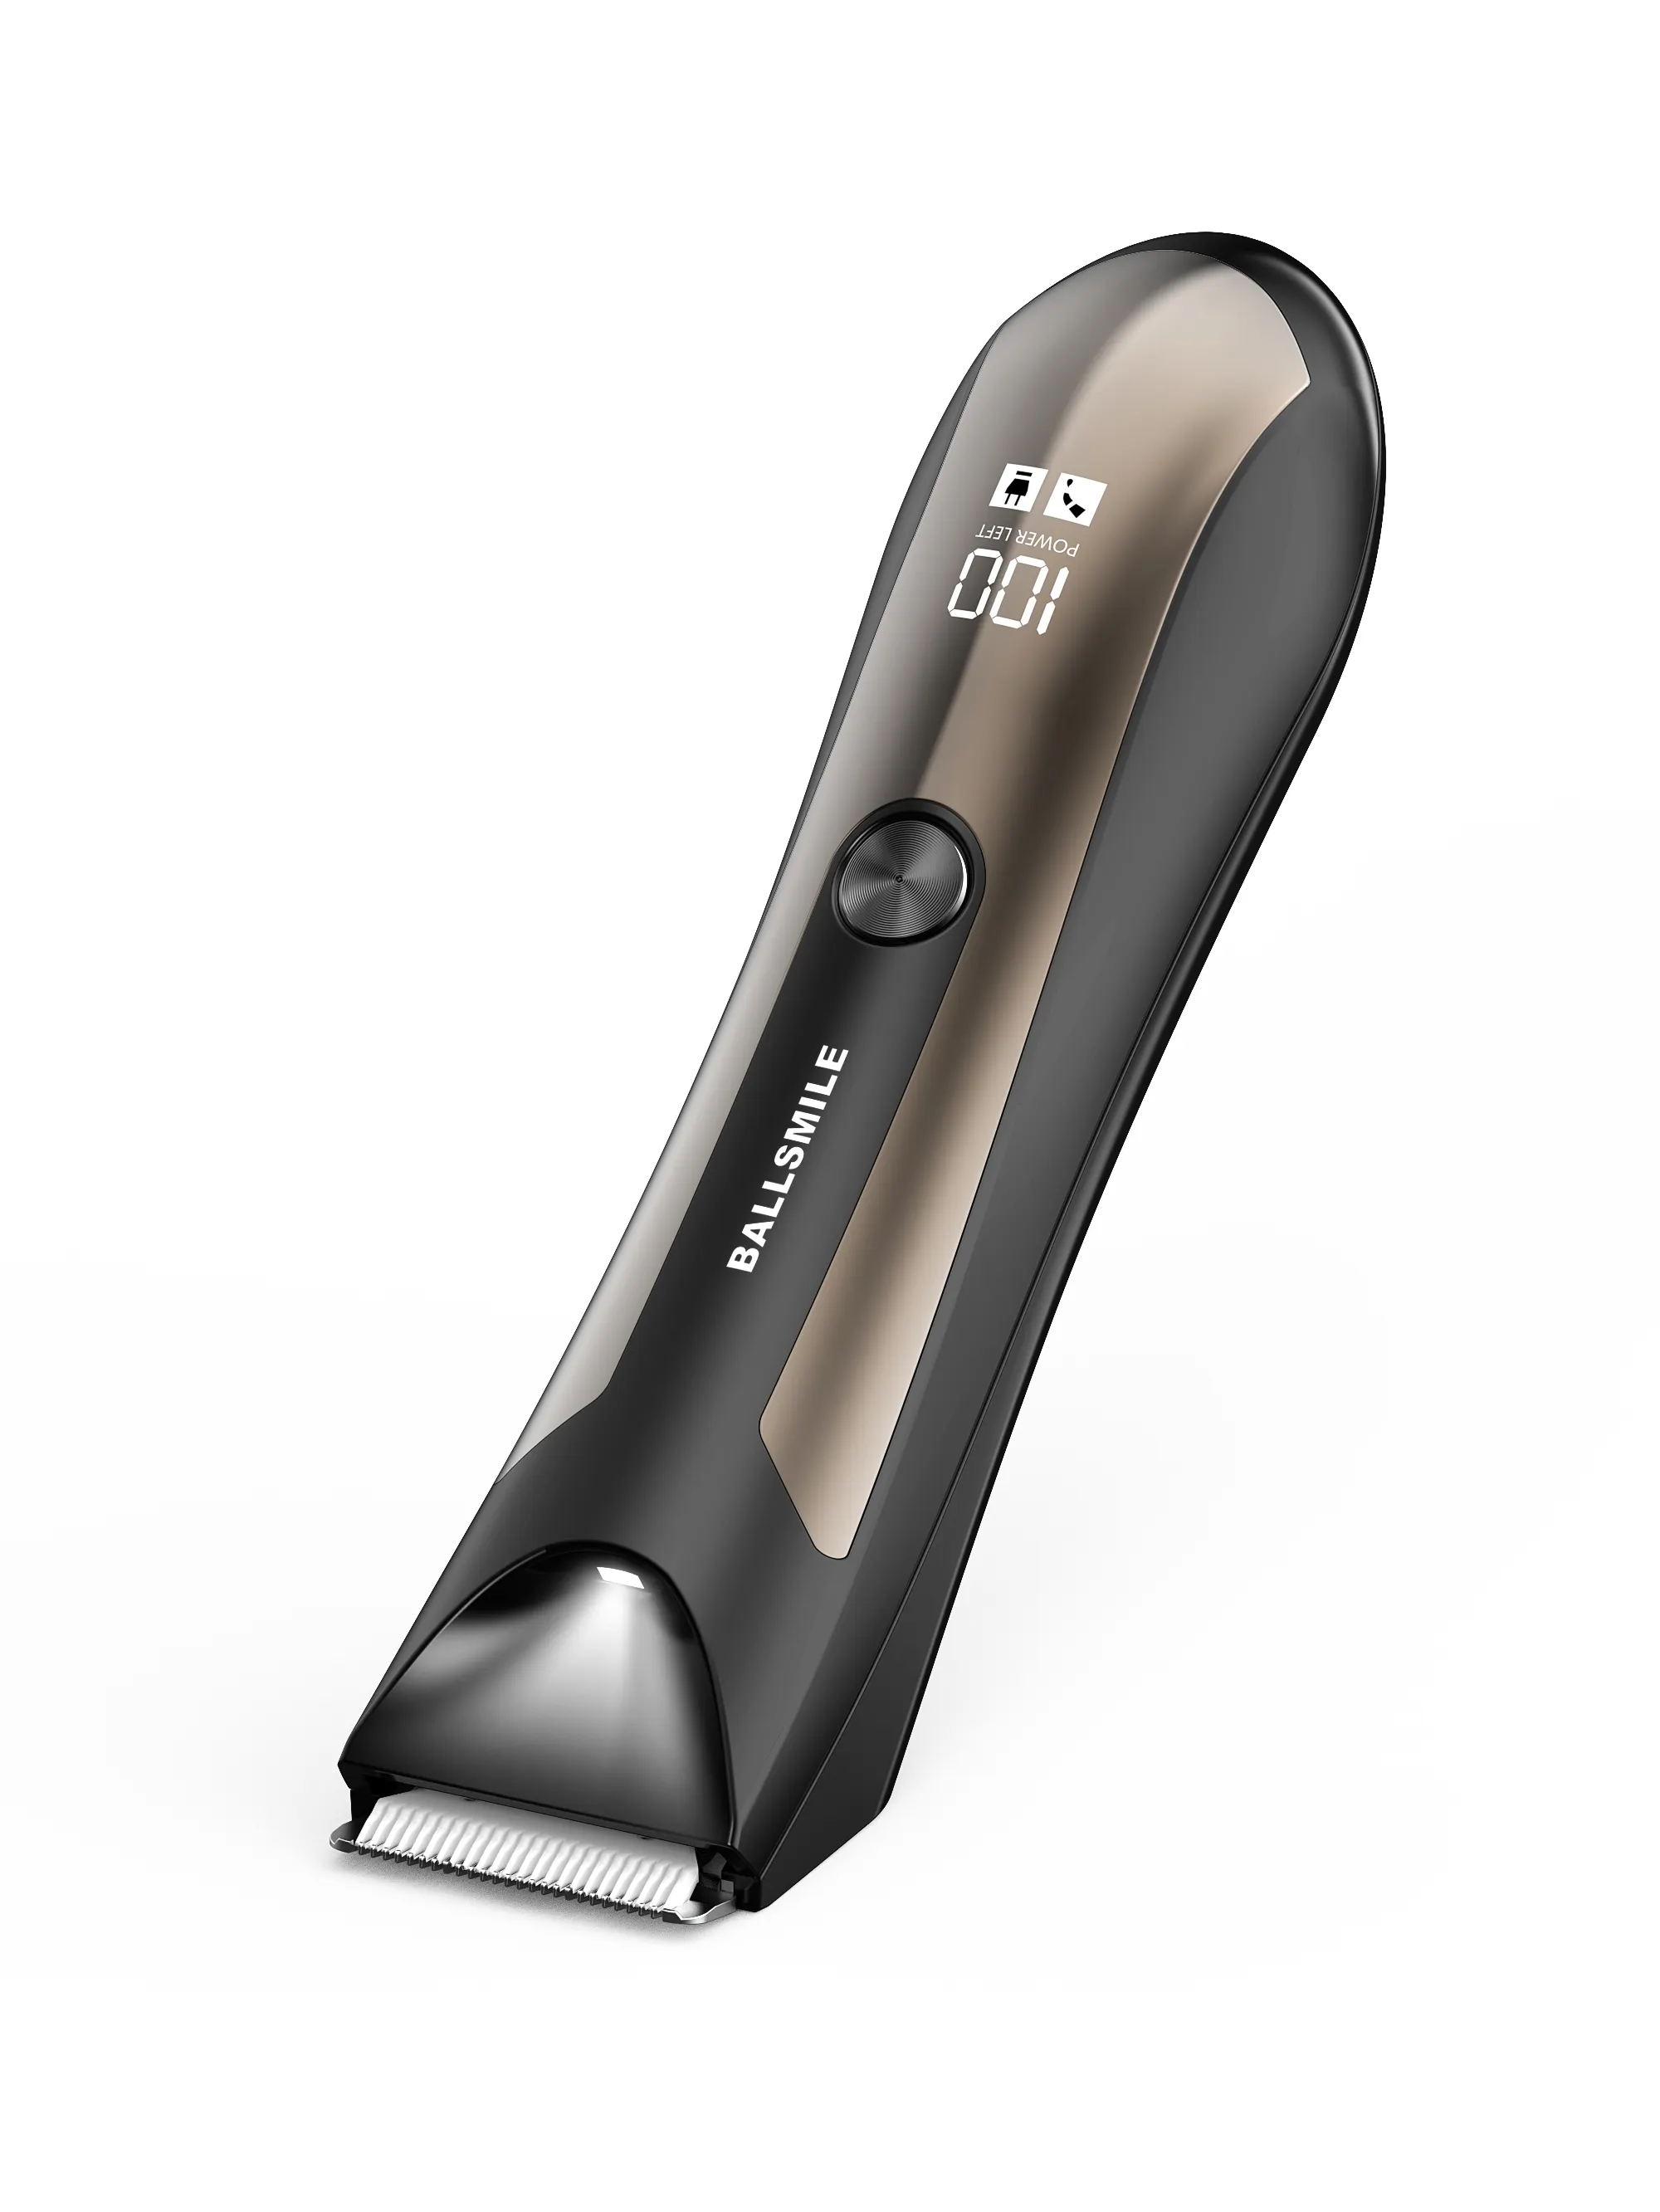 Tondeuse à boulets de rasoir pour hygiène masculine ODM USB Recharge Dock avec 1 an de garantie